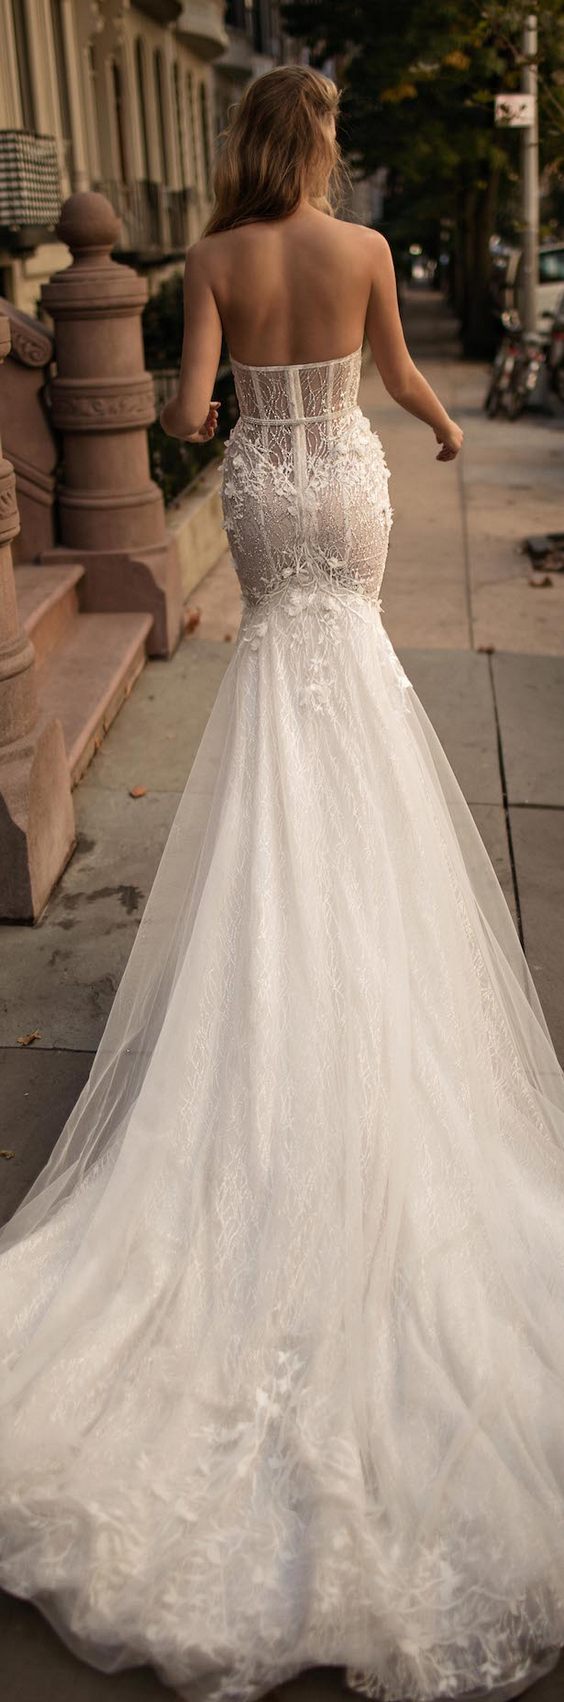 Berta Bridal Fall Wedding Dresses 2017